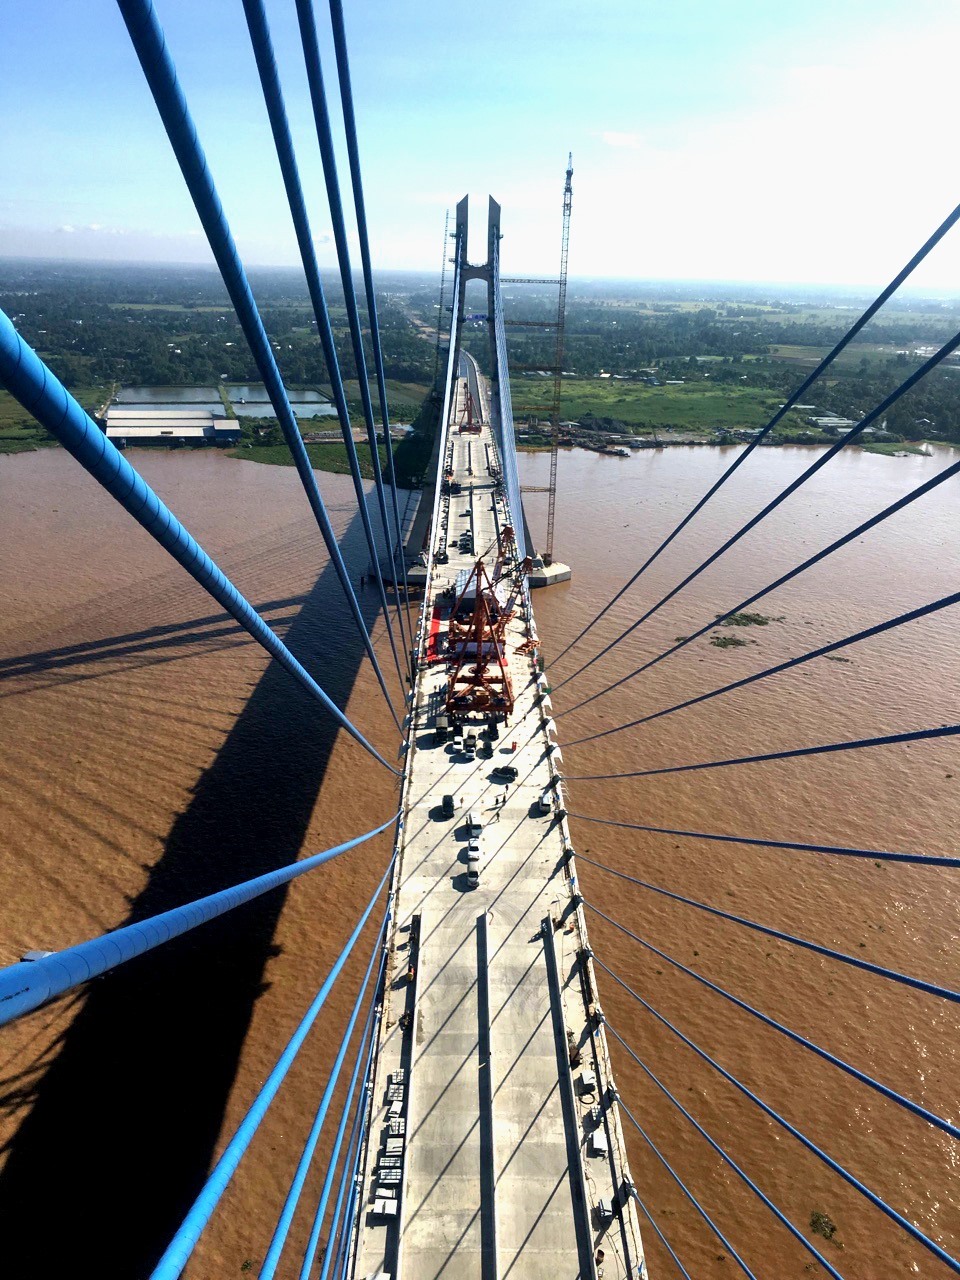 Cầu Vàm Cống là cây cầu dây văng bắc qua sông Hậu, nối liền thành phố Cần Thơ và tỉnh Đồng Tháp. Cầu Vàm Cống cách bến phà Vàm Cống khoảng 3 km về phía hạ lưu sông Hậu, và thay thế cụm phà này kể từ khi cầu đi vào hoạt động vào ngày 19 tháng 5 năm 2019. Ảnh: Lục Tùng